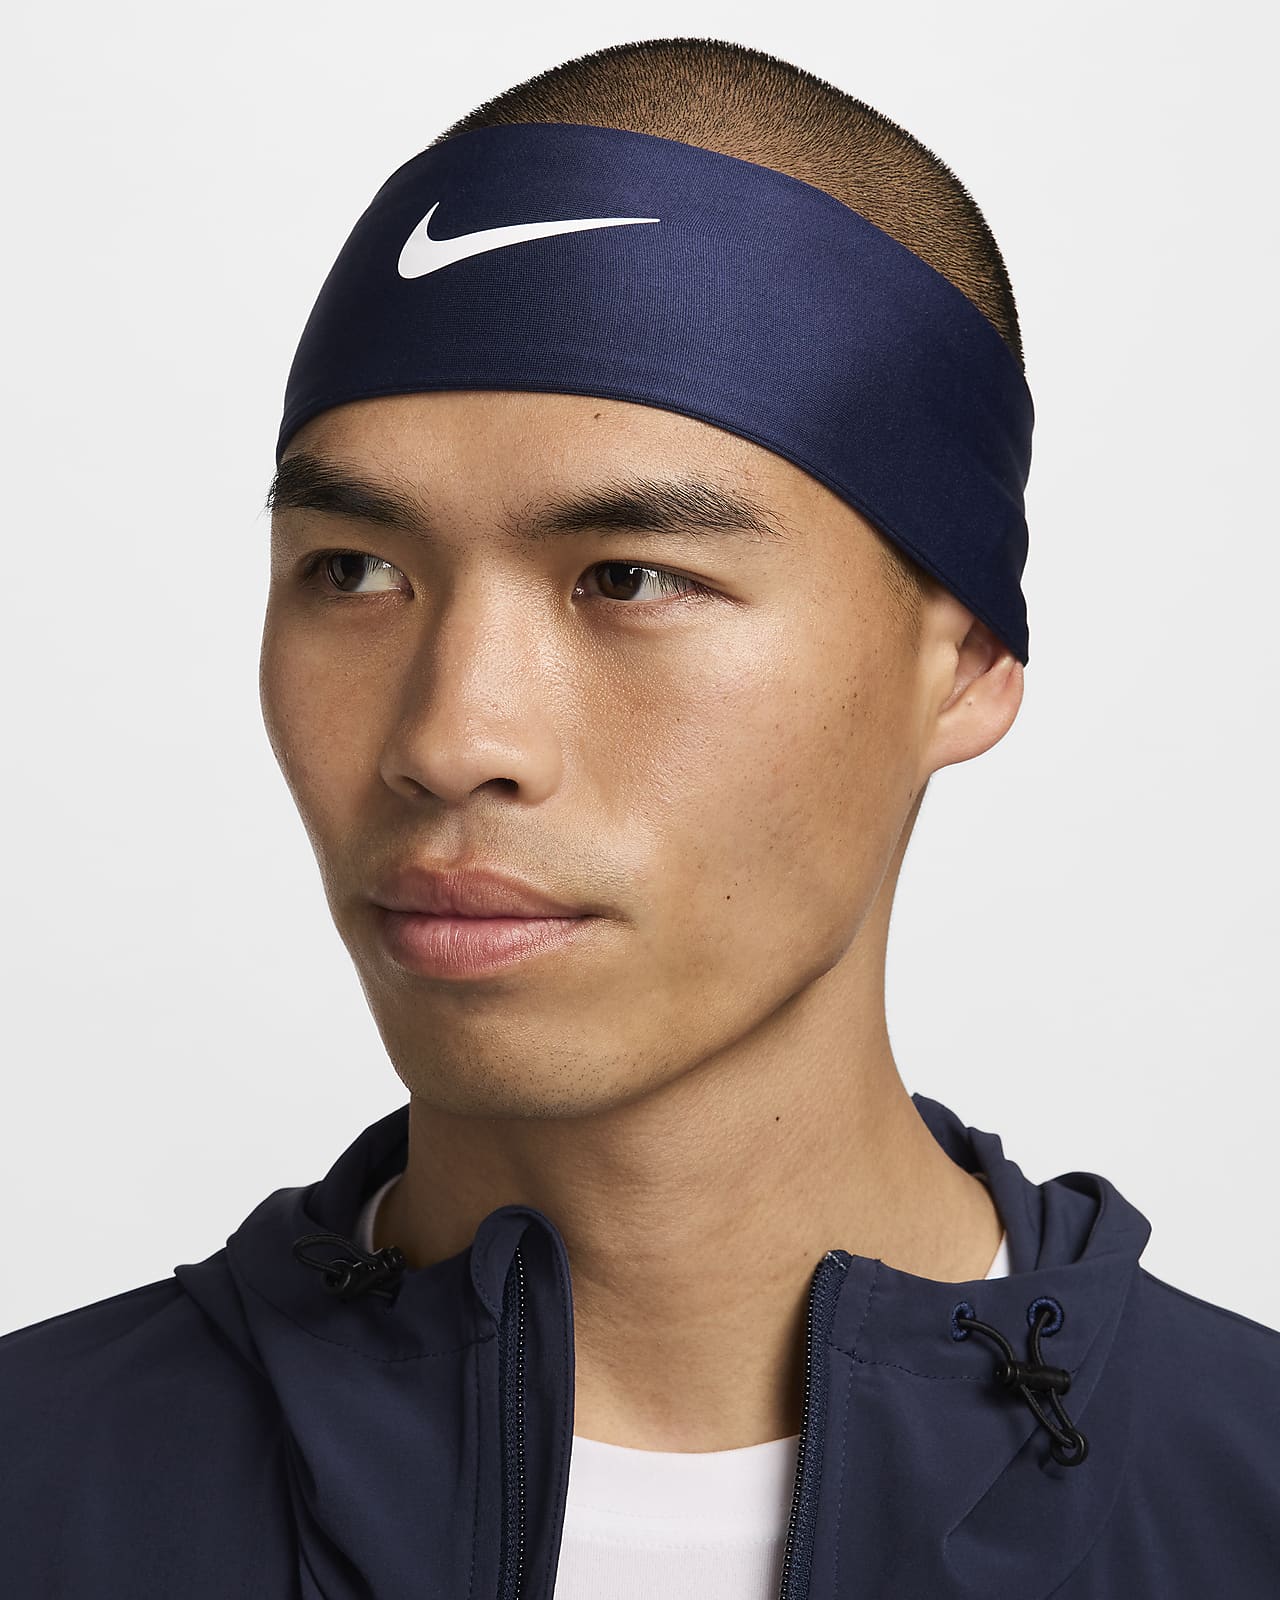 Men`s and women`s sports headbands - Brilliant Promos - Be Brilliant!